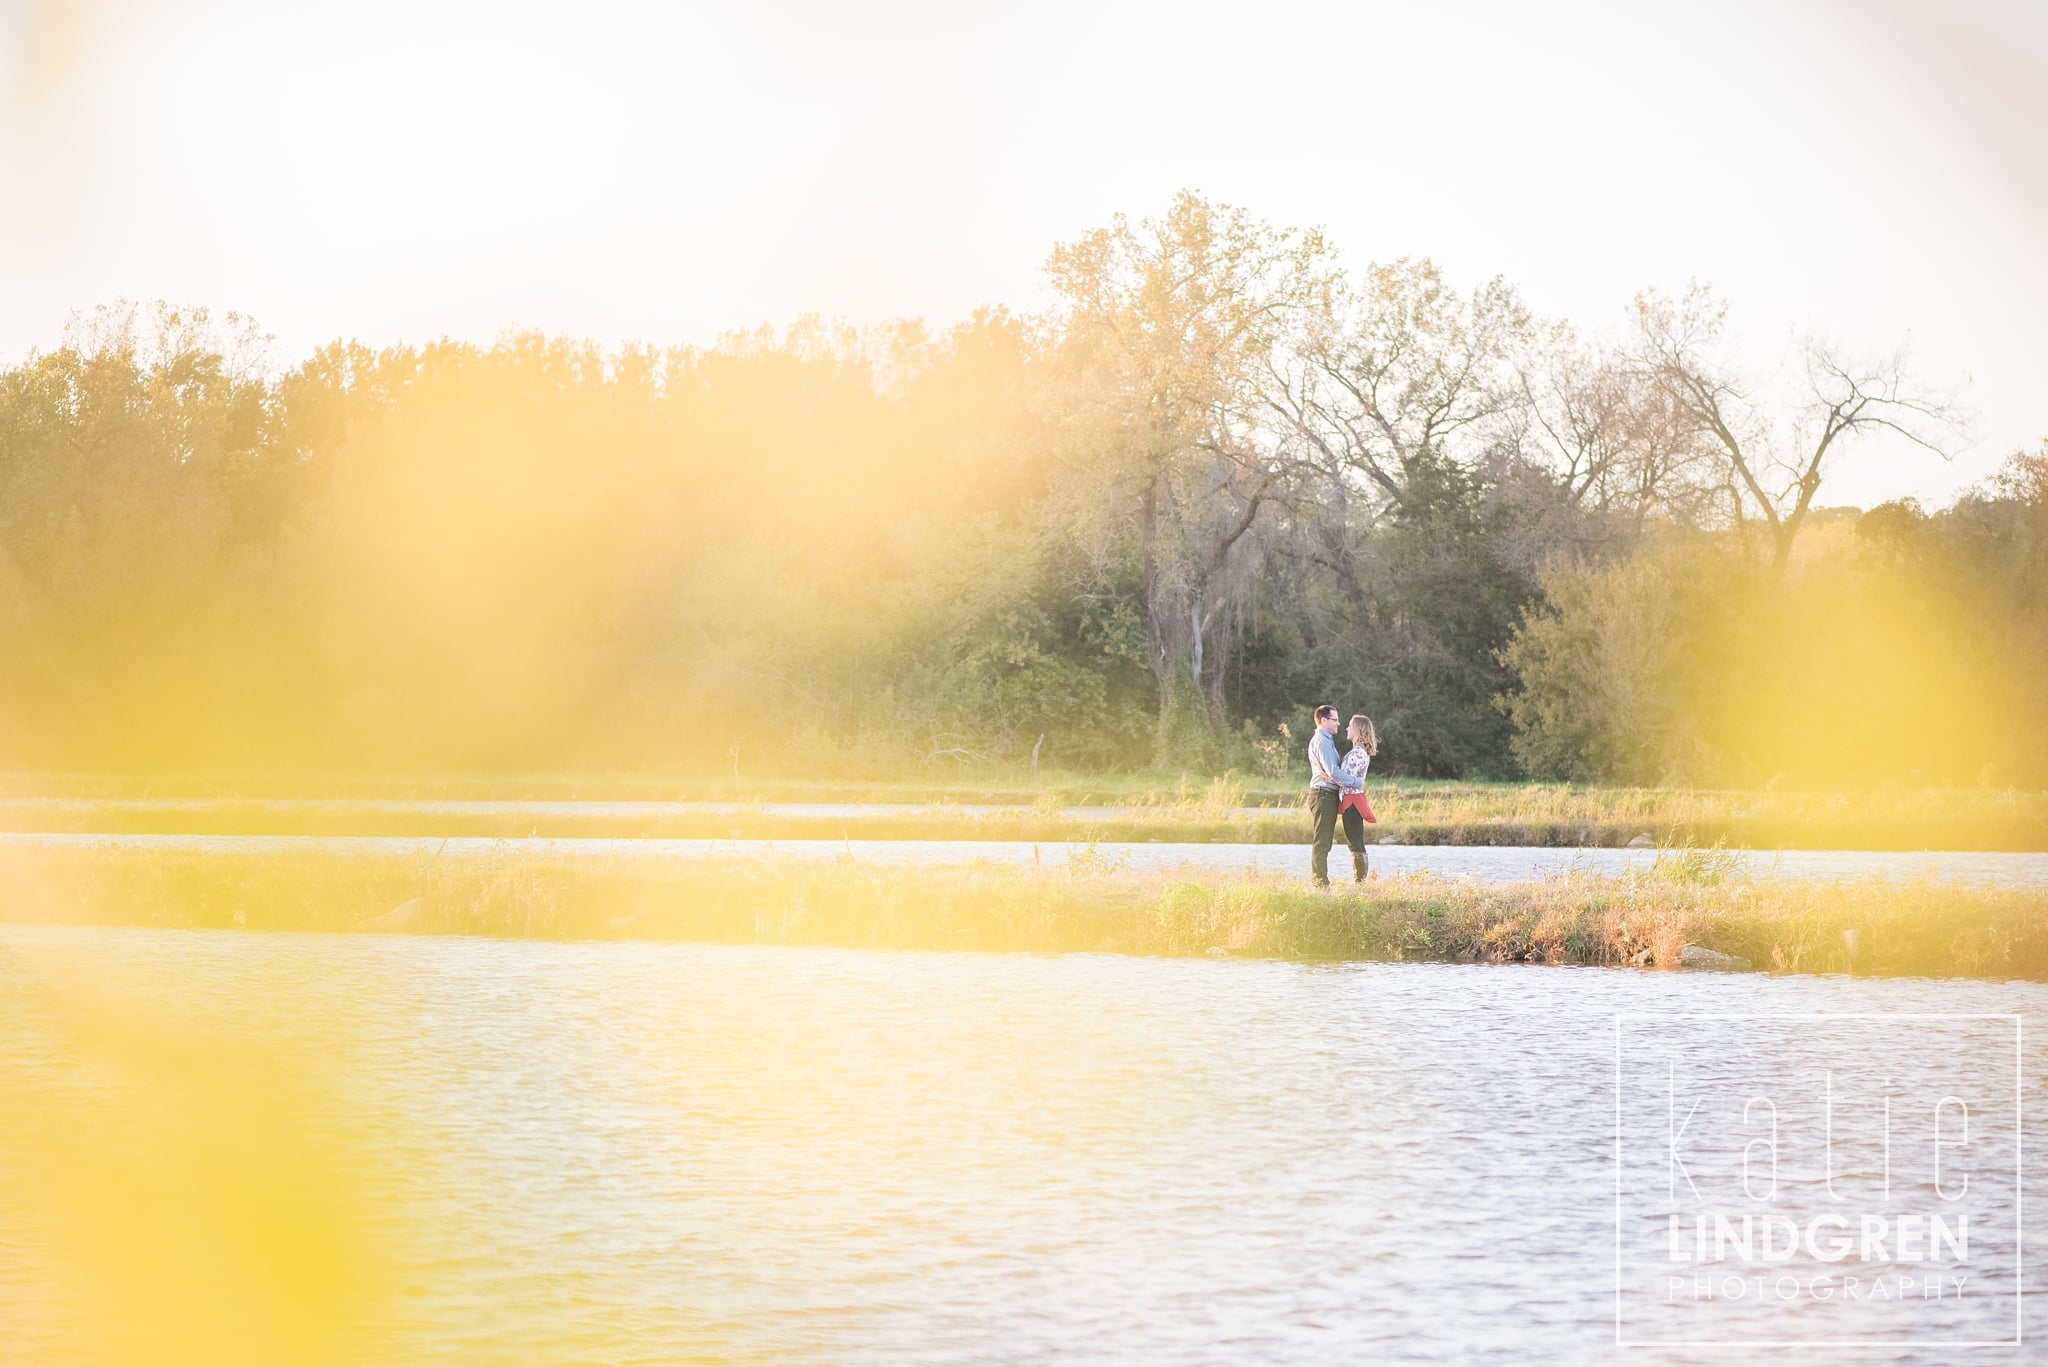 Liz & Blane | Des Moines Iowa Engagement Photographer